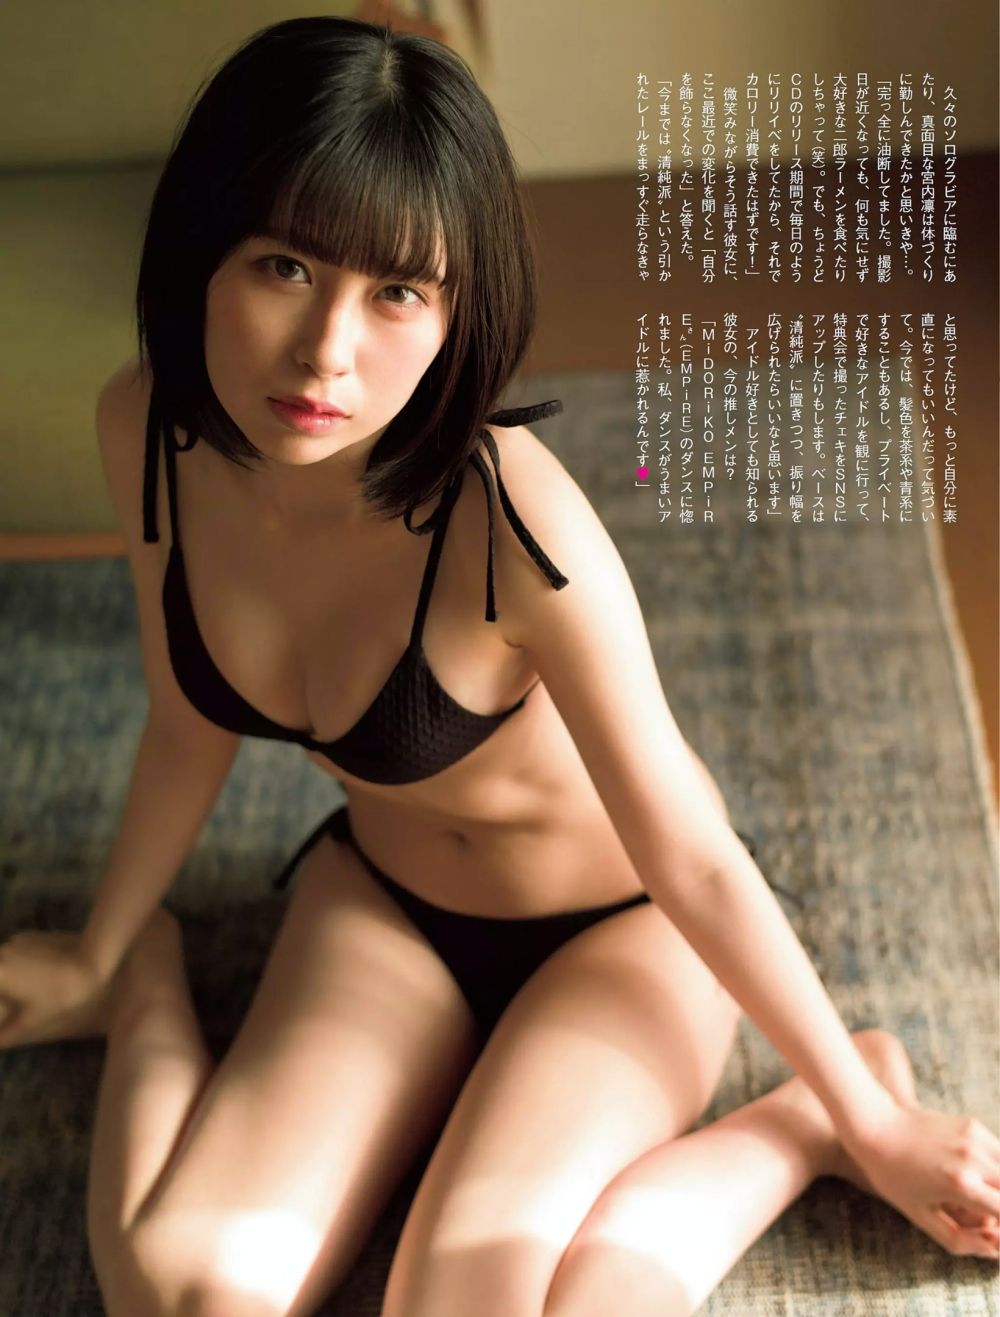 宫内凛 Sexy and Hottest Photos , Latest Pics